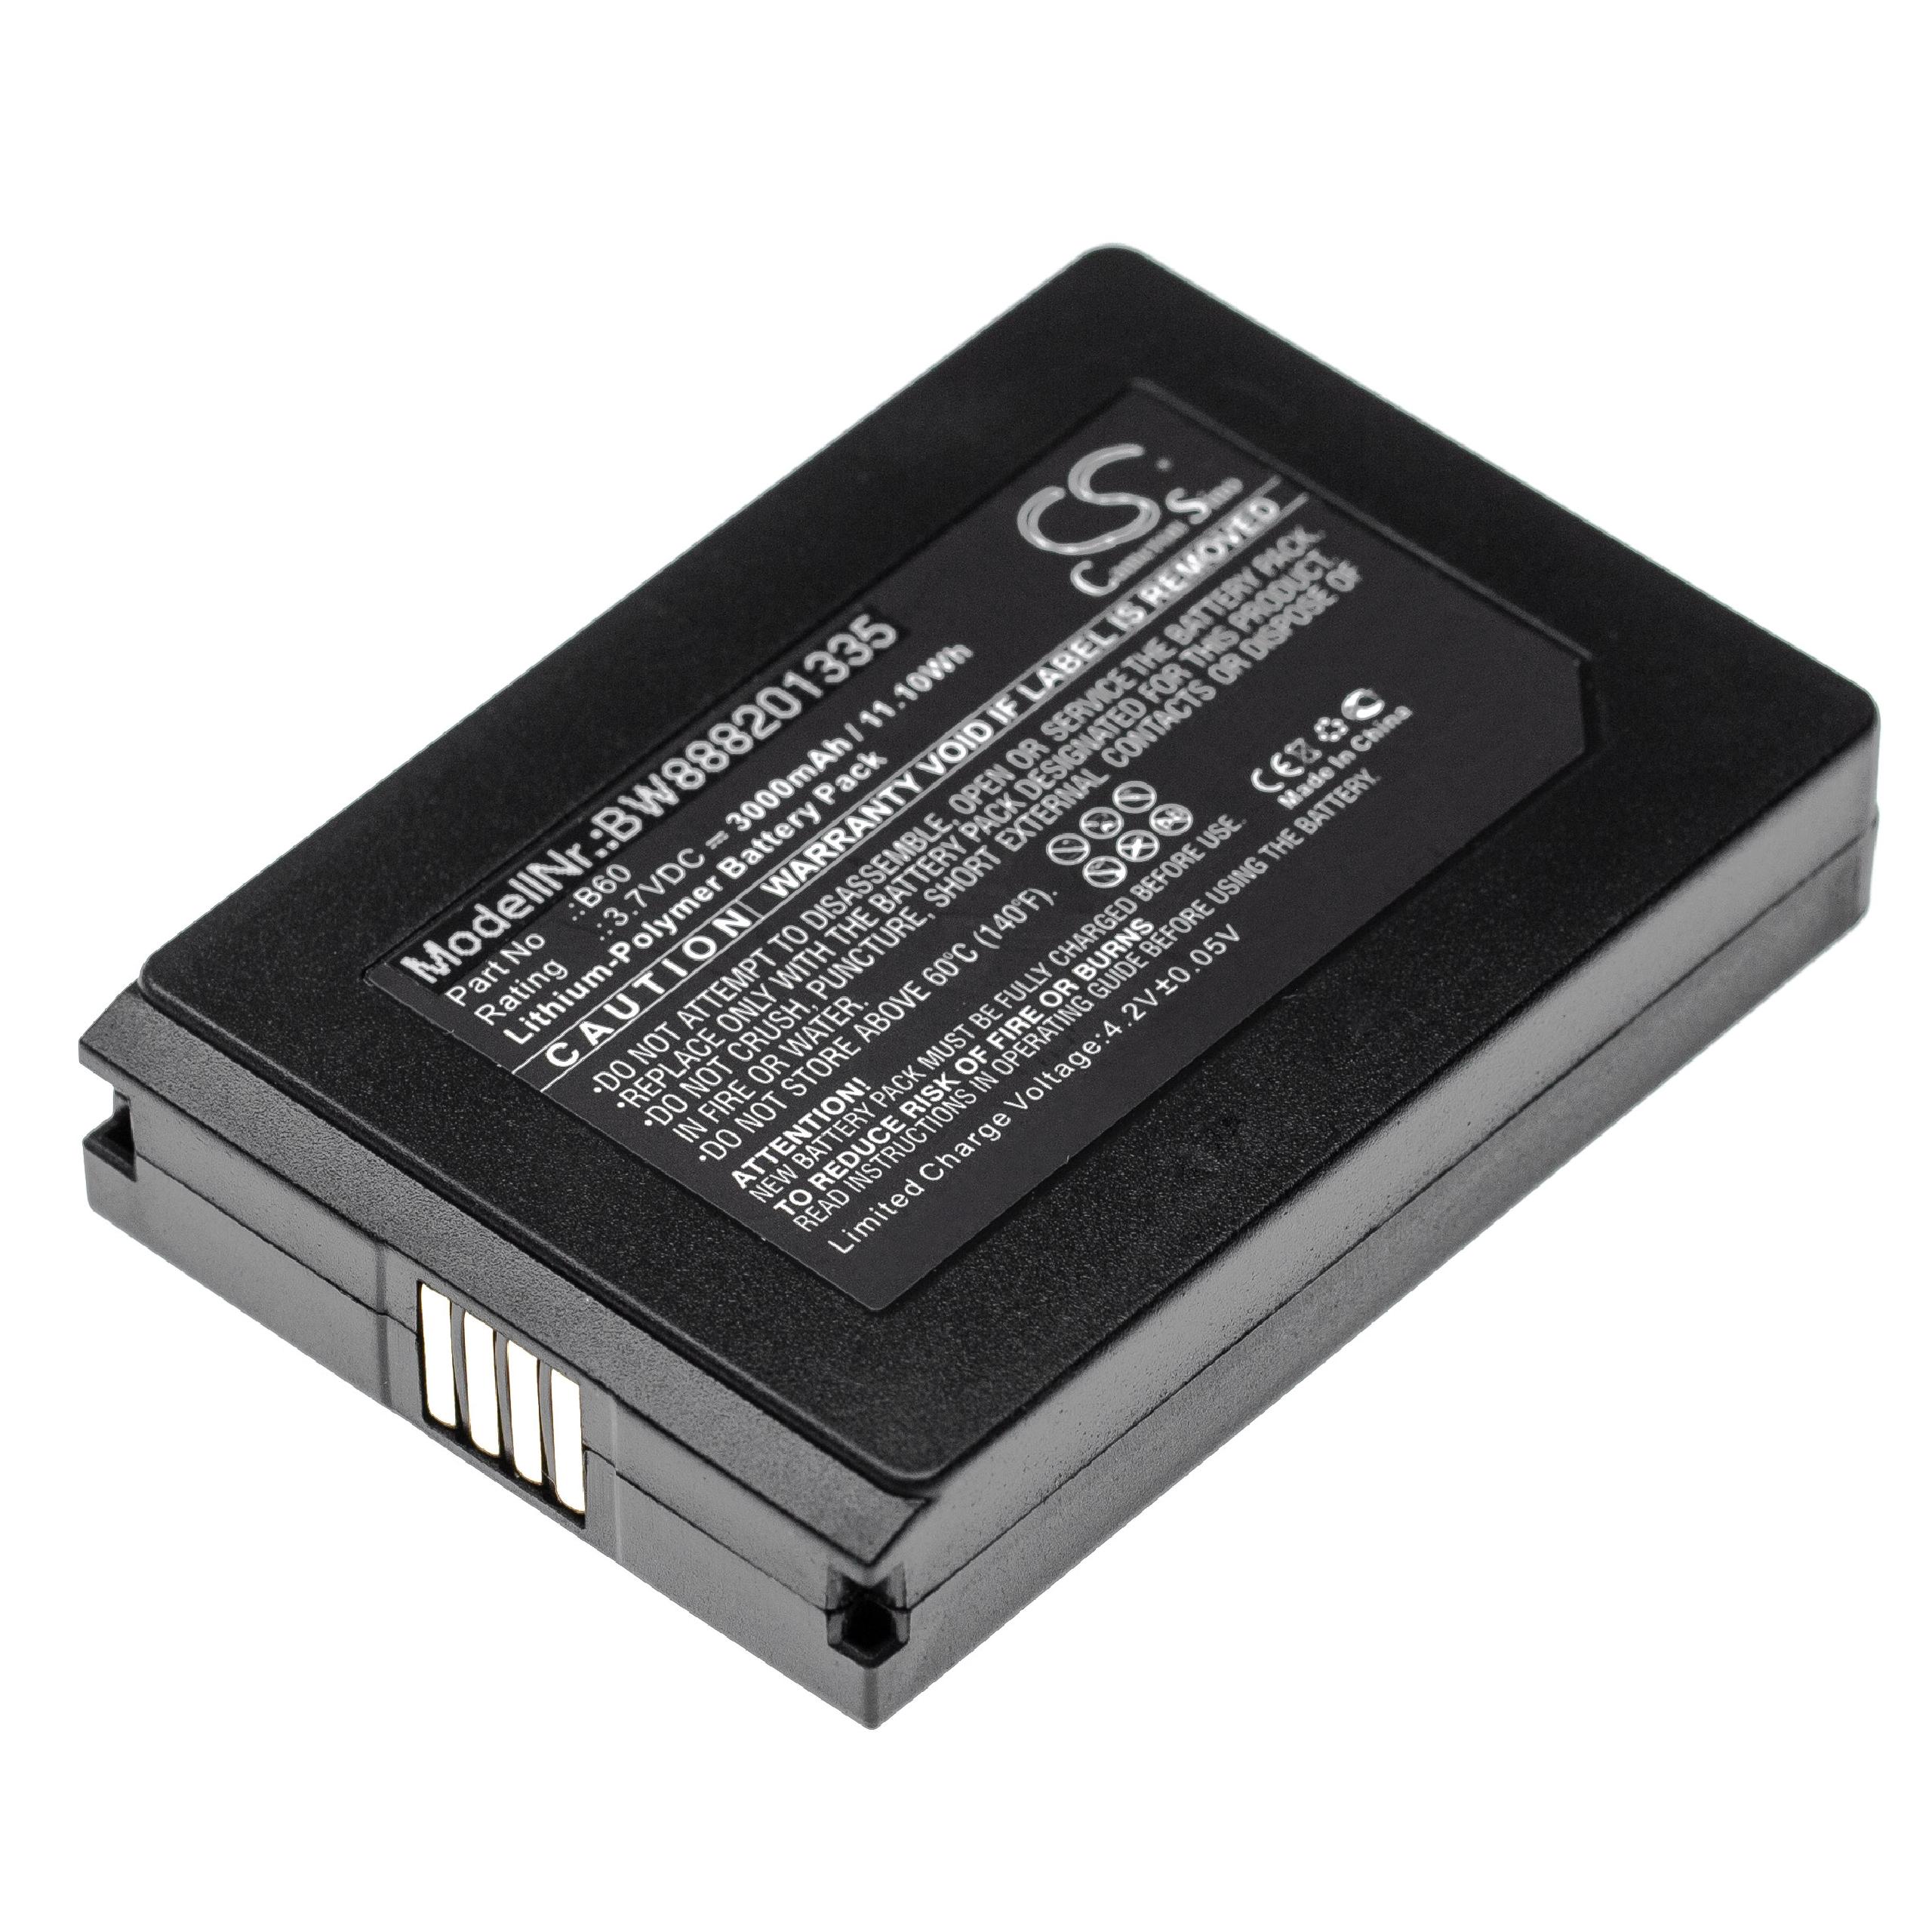 Batterie remplace Vectron B60 pour scanner de code-barre - 3000mAh 3,7V Li-polymère